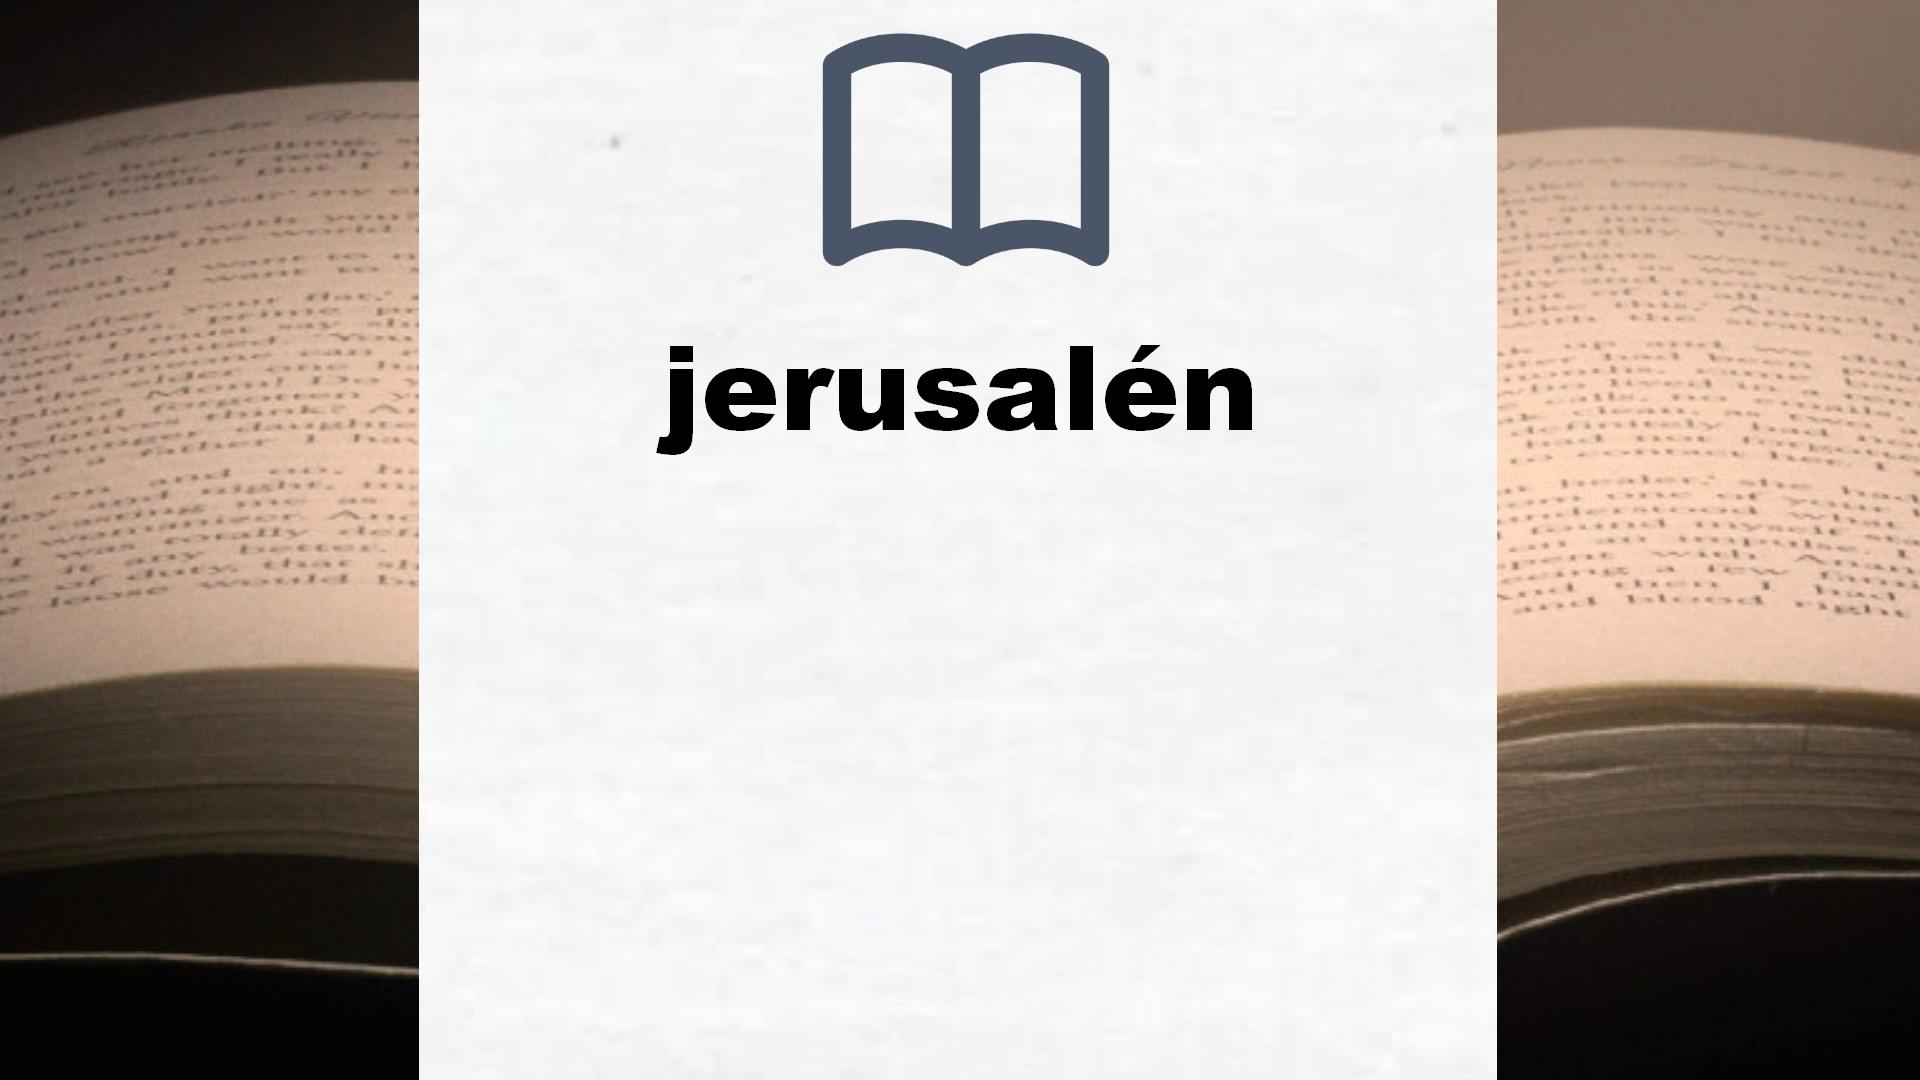 Libros sobre jerusalén